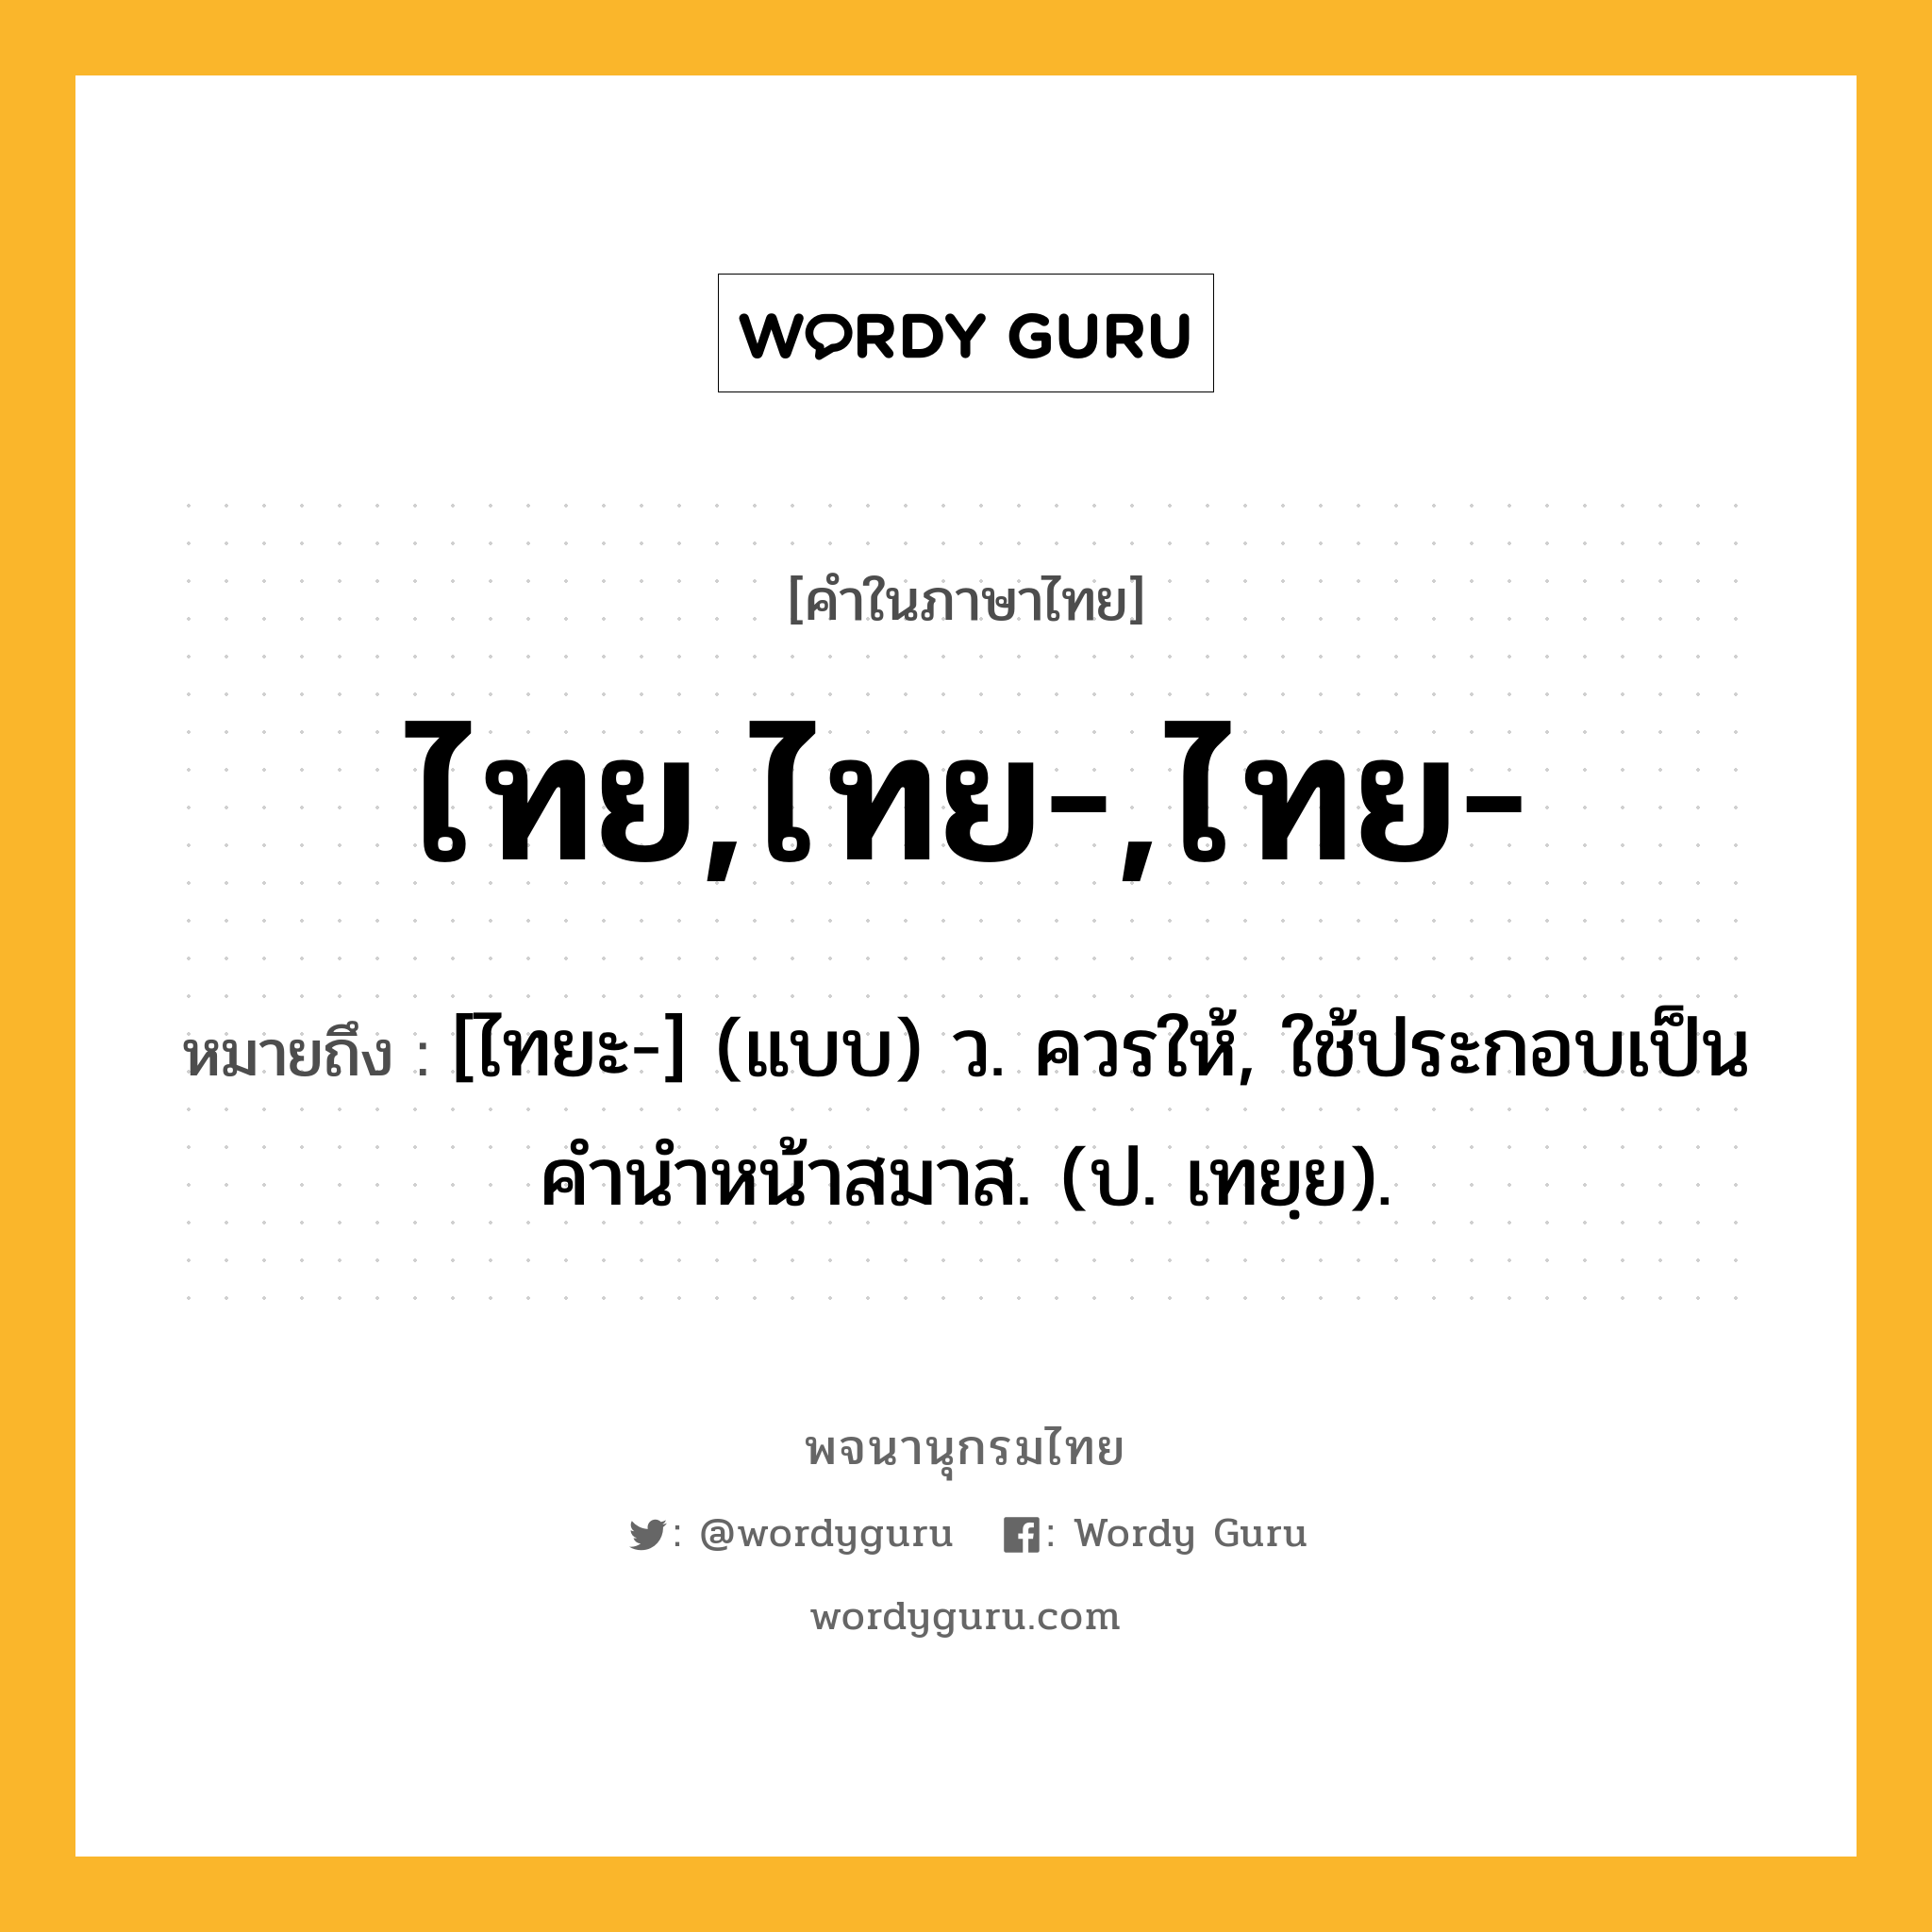 ไทย,ไทย-,ไทย- หมายถึงอะไร?, คำในภาษาไทย ไทย,ไทย-,ไทย- หมายถึง [ไทยะ-] (แบบ) ว. ควรให้, ใช้ประกอบเป็นคํานําหน้าสมาส. (ป. เทยฺย).